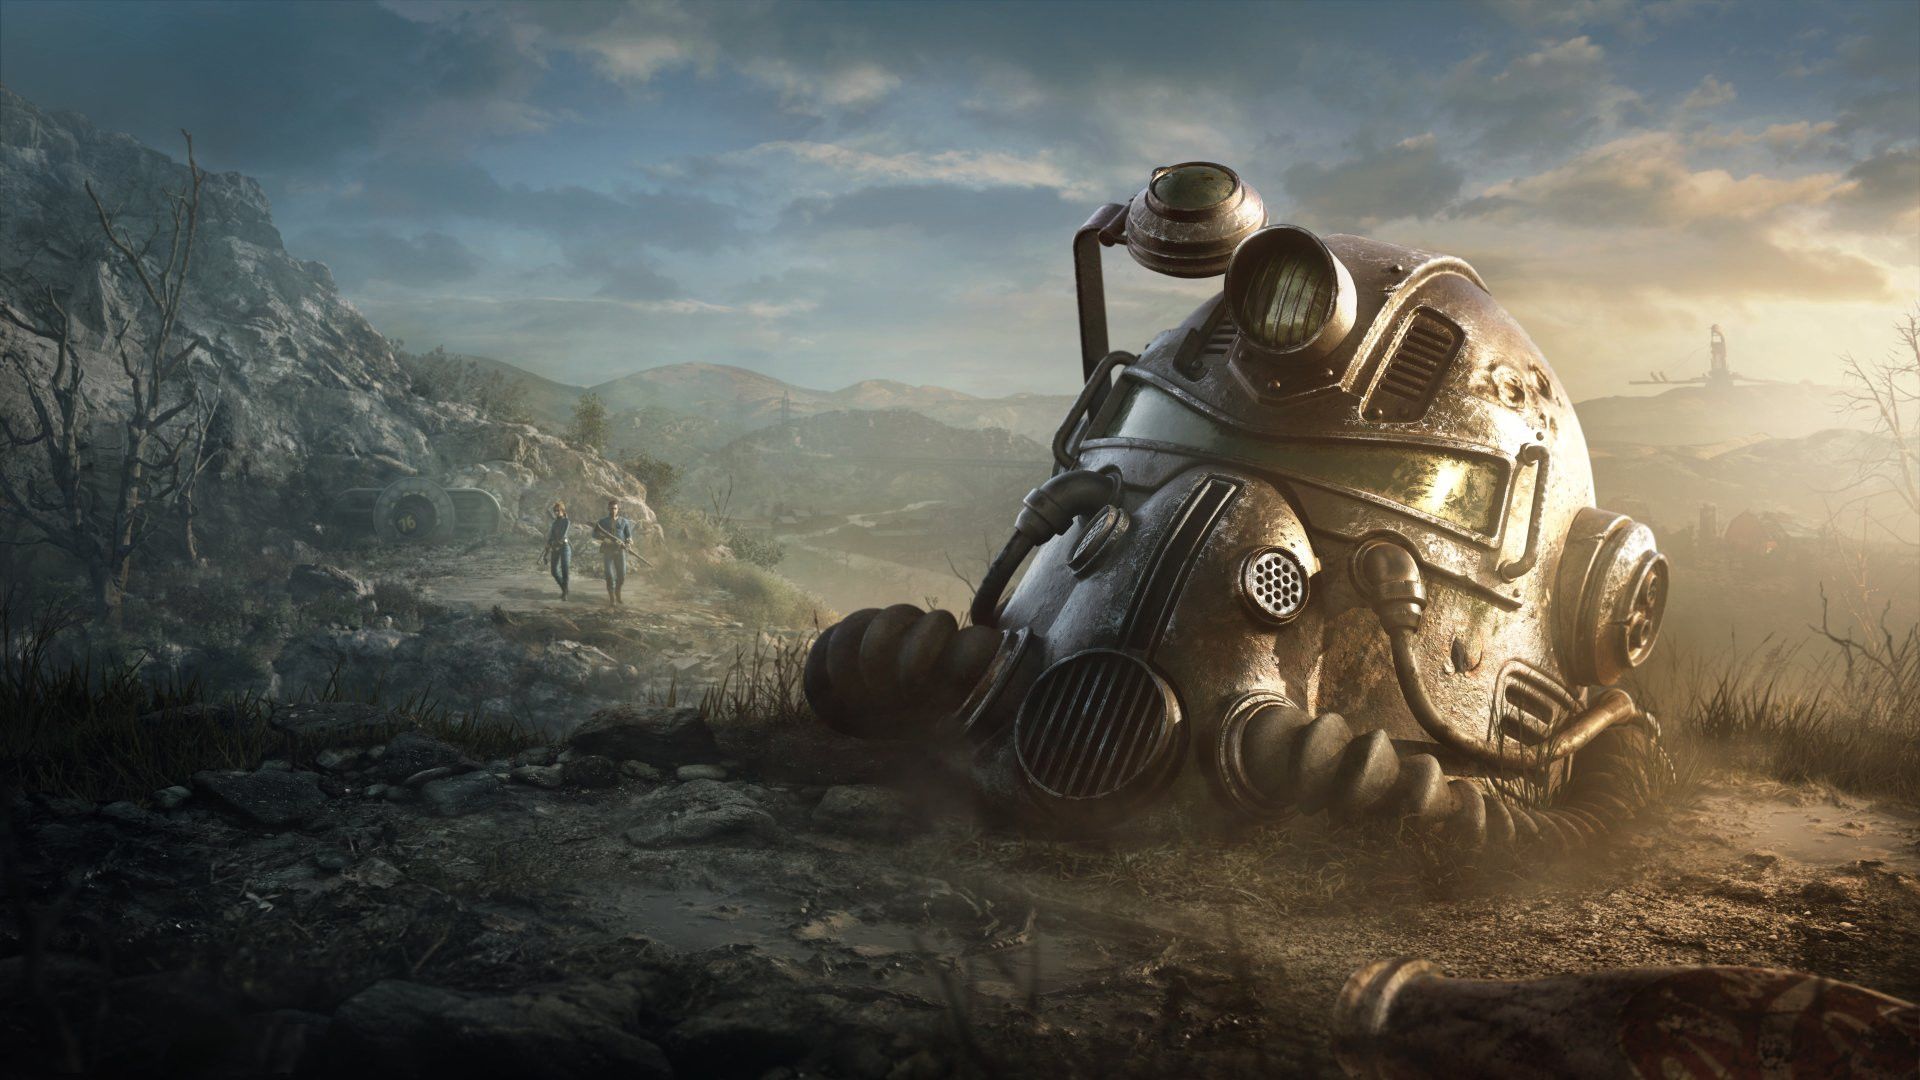 Съёмки сериала по Fallout начнутся уже в 2022 году